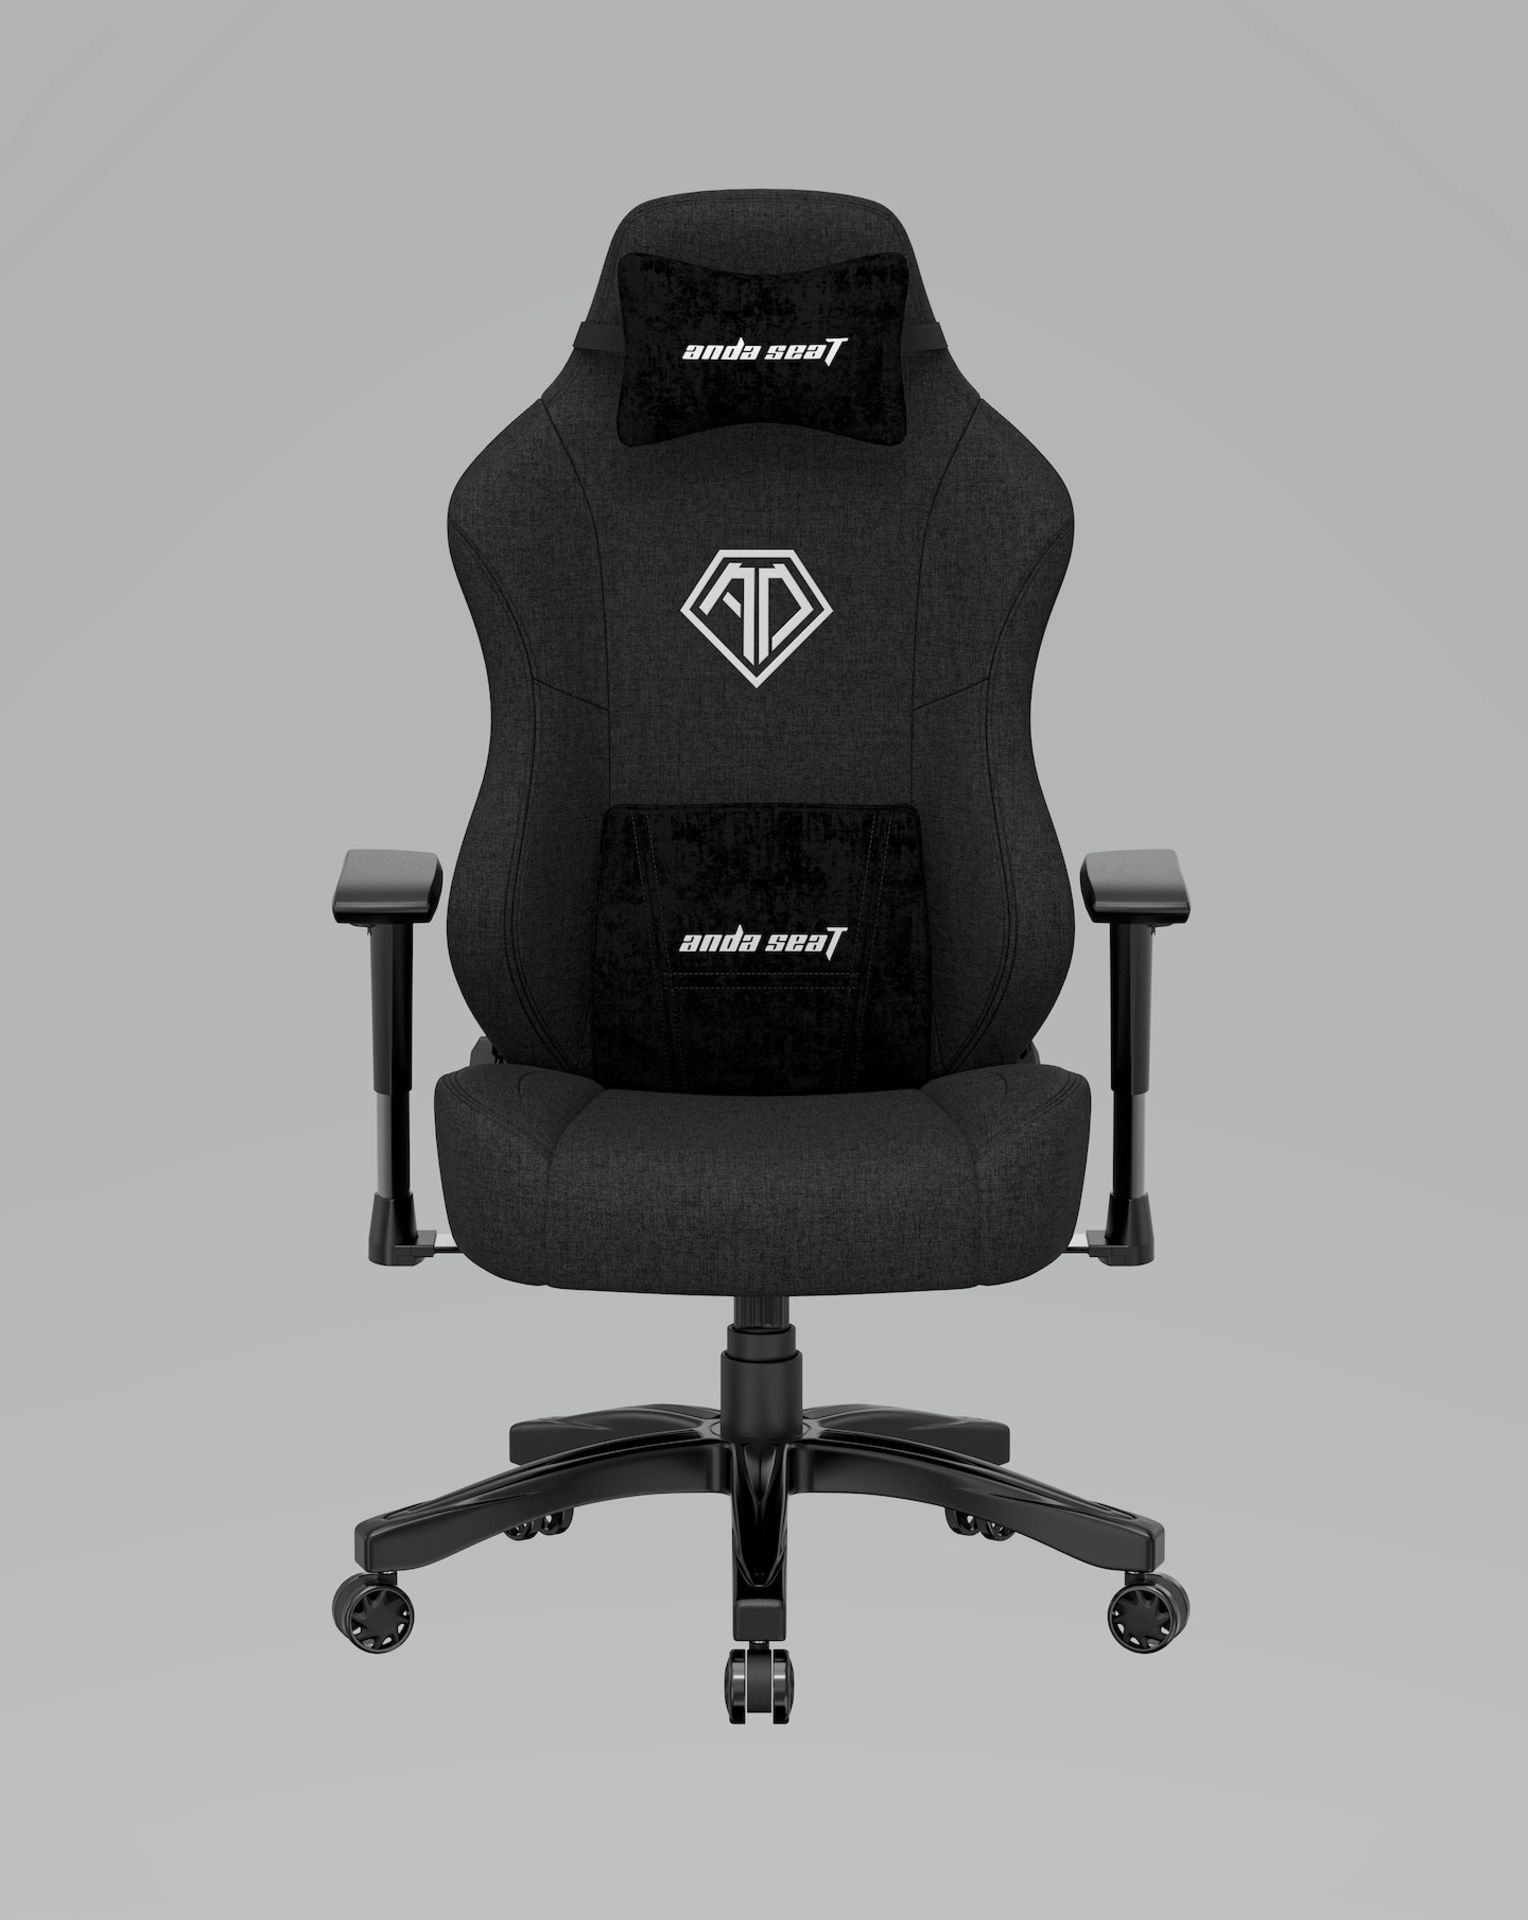 Andaseat Phantom 3 Gaming Chair - Black - ER27